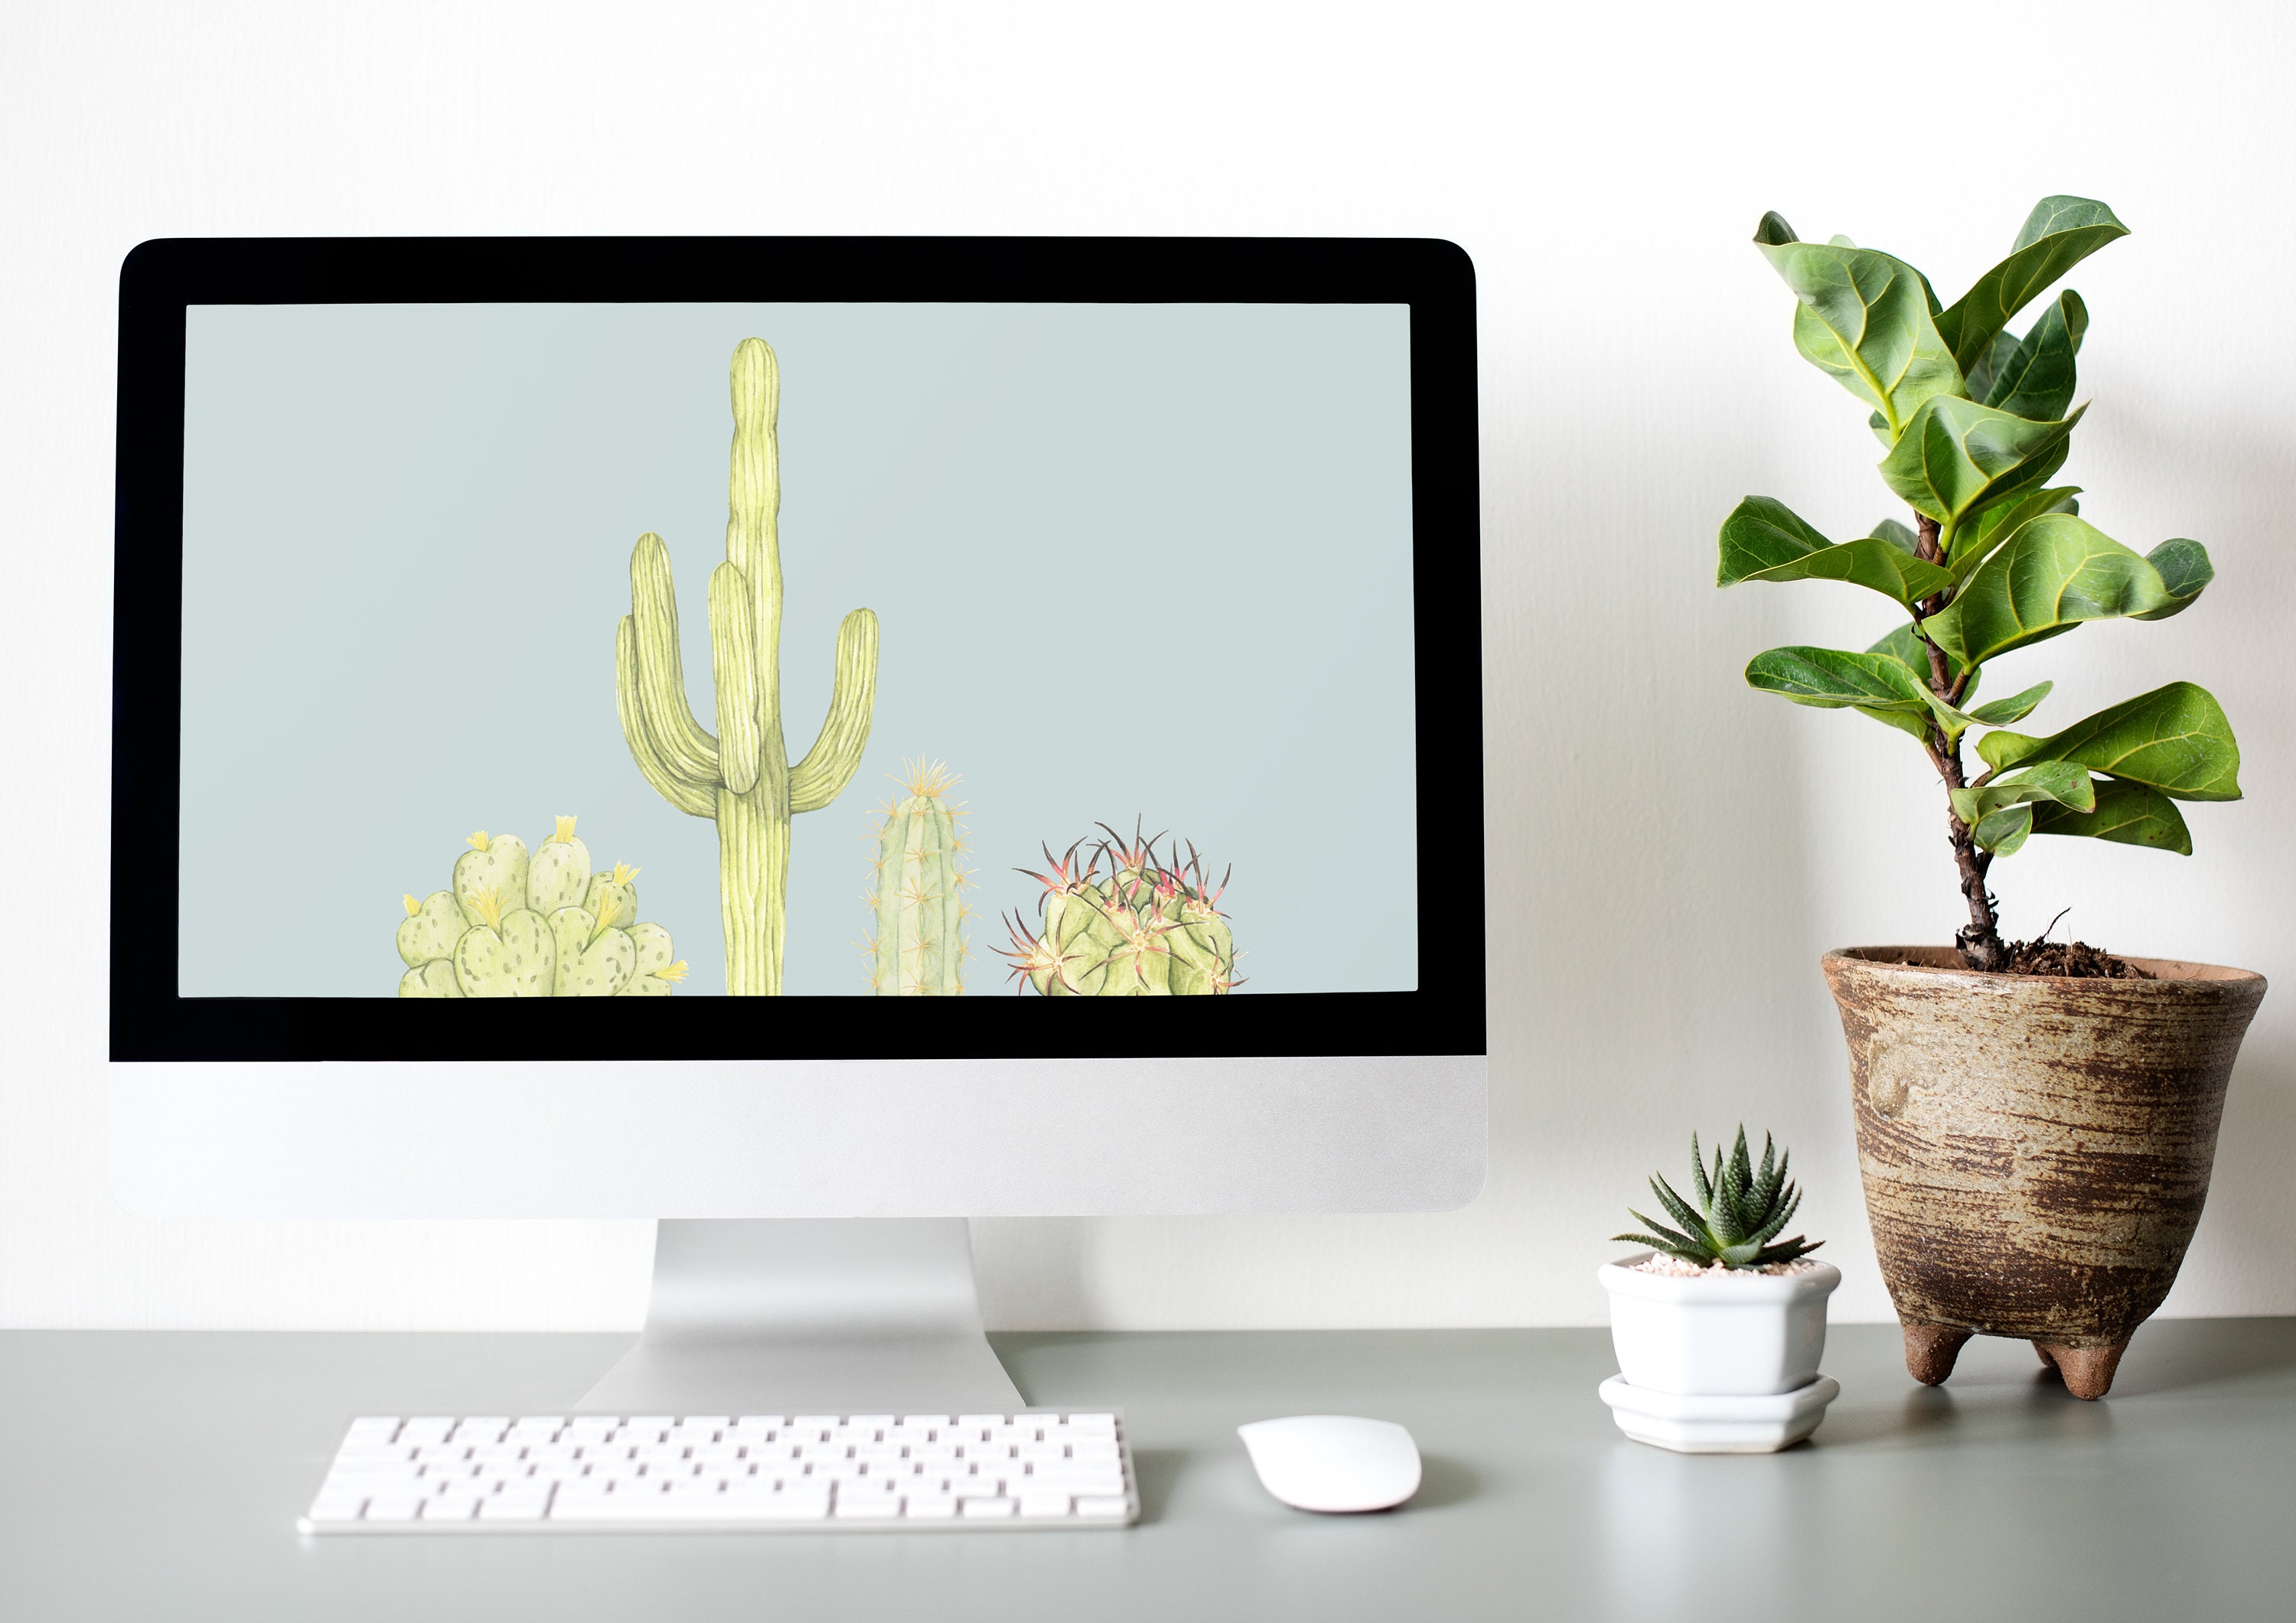 Hình nền cây xương rồng sẽ là lựa chọn tuyệt vời cho những người yêu thích sự hoang dã, phóng khoáng trong thiết kế nội thất. Cùng chiêm ngưỡng những cảnh sắc thiên nhiên tuyệt đẹp trên màn hình desktop của bạn.